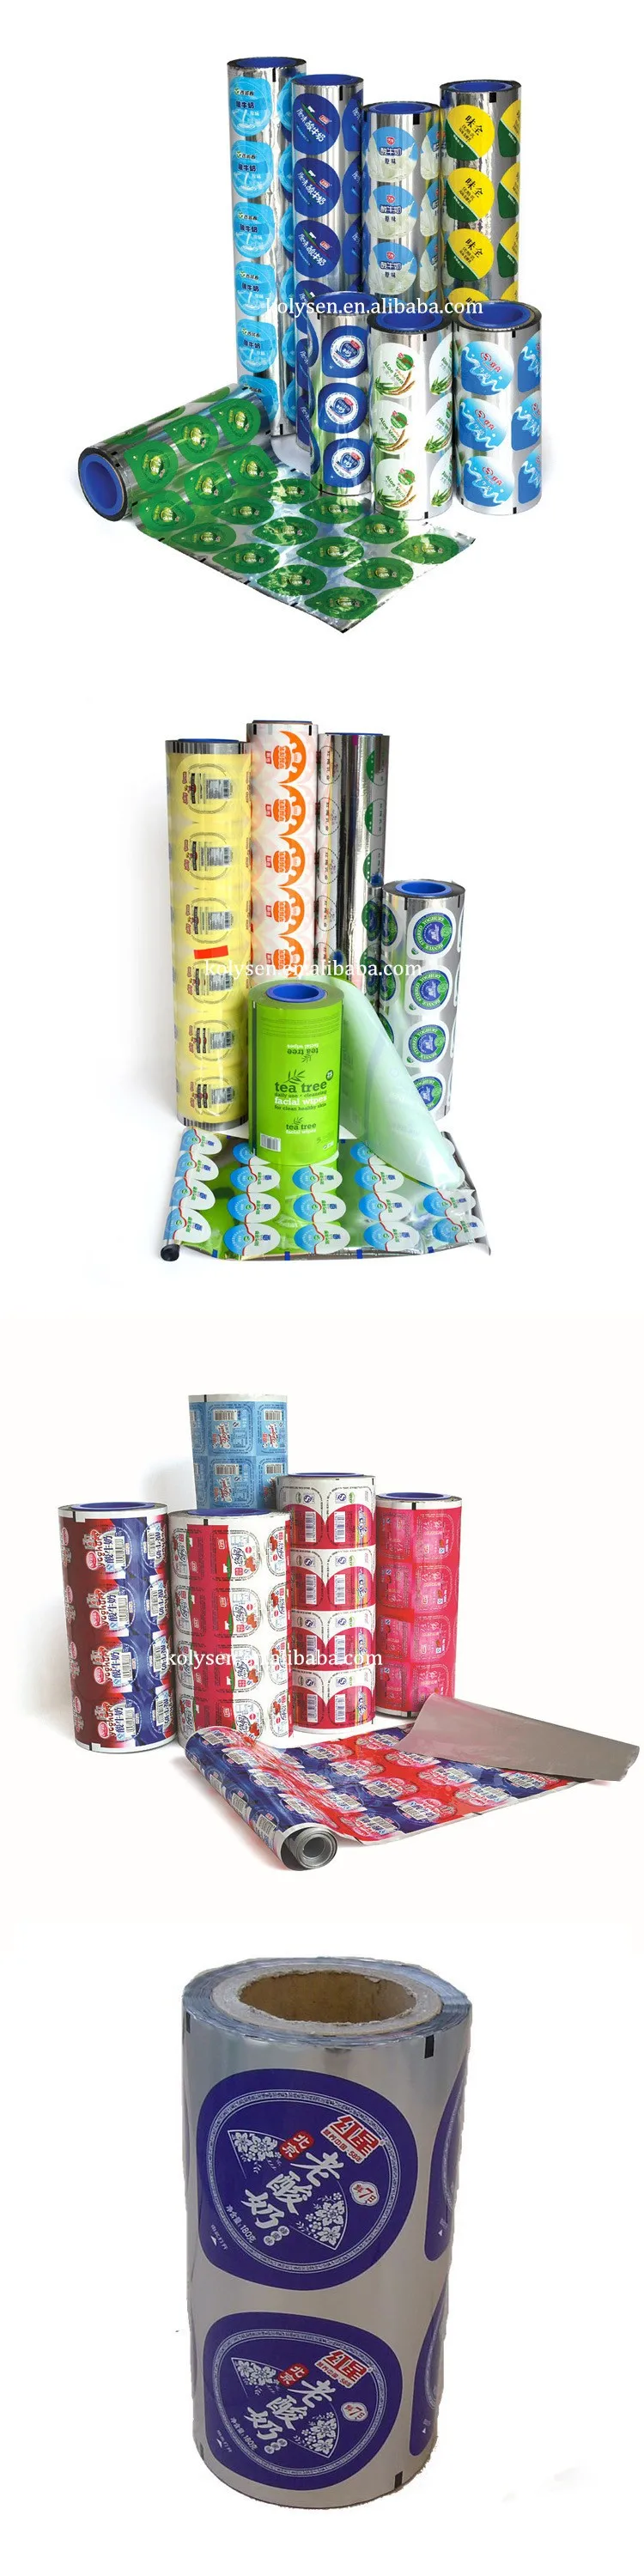 PP Cup AL Foil Lid for Yogurt Cover Seal & Closure Printed Soft